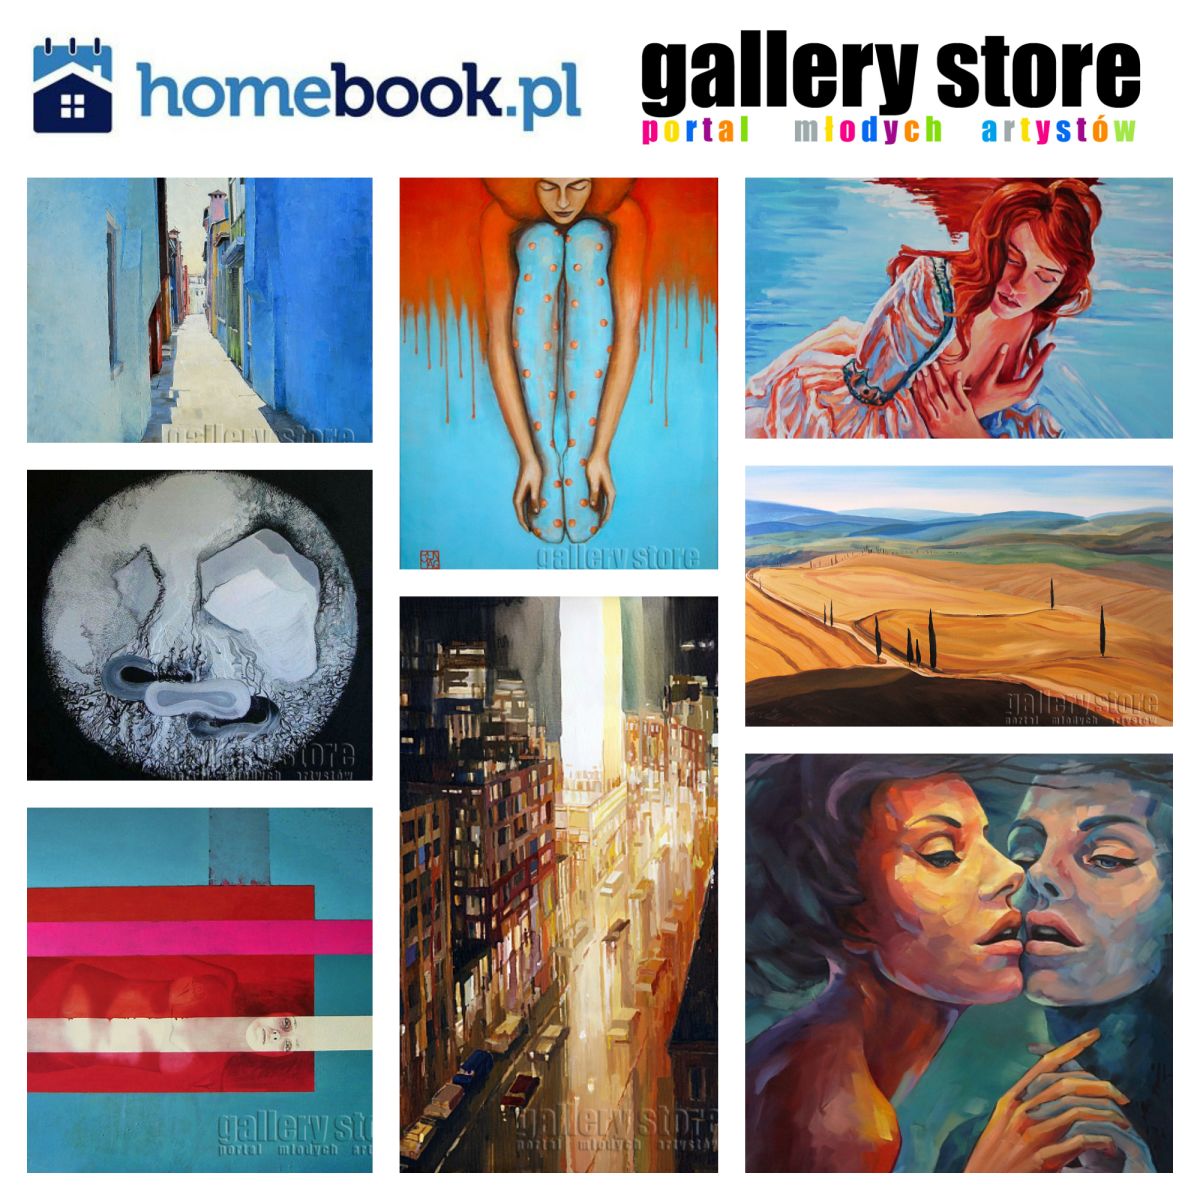 Miło nam poinformować o współpracy Gallerystore & Homebook!